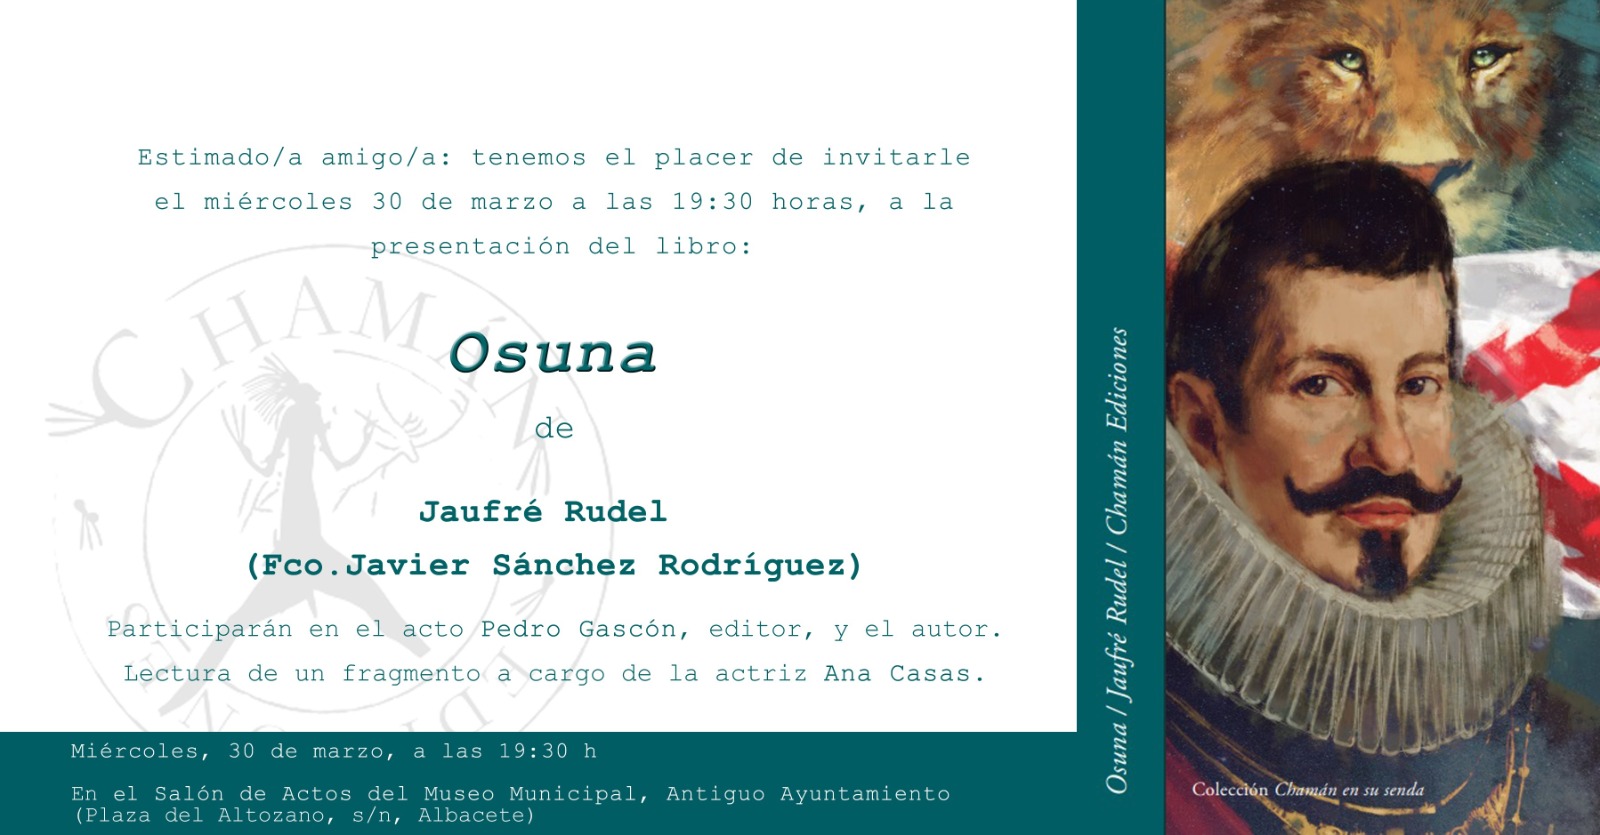 Invitación_Albacete_osuna